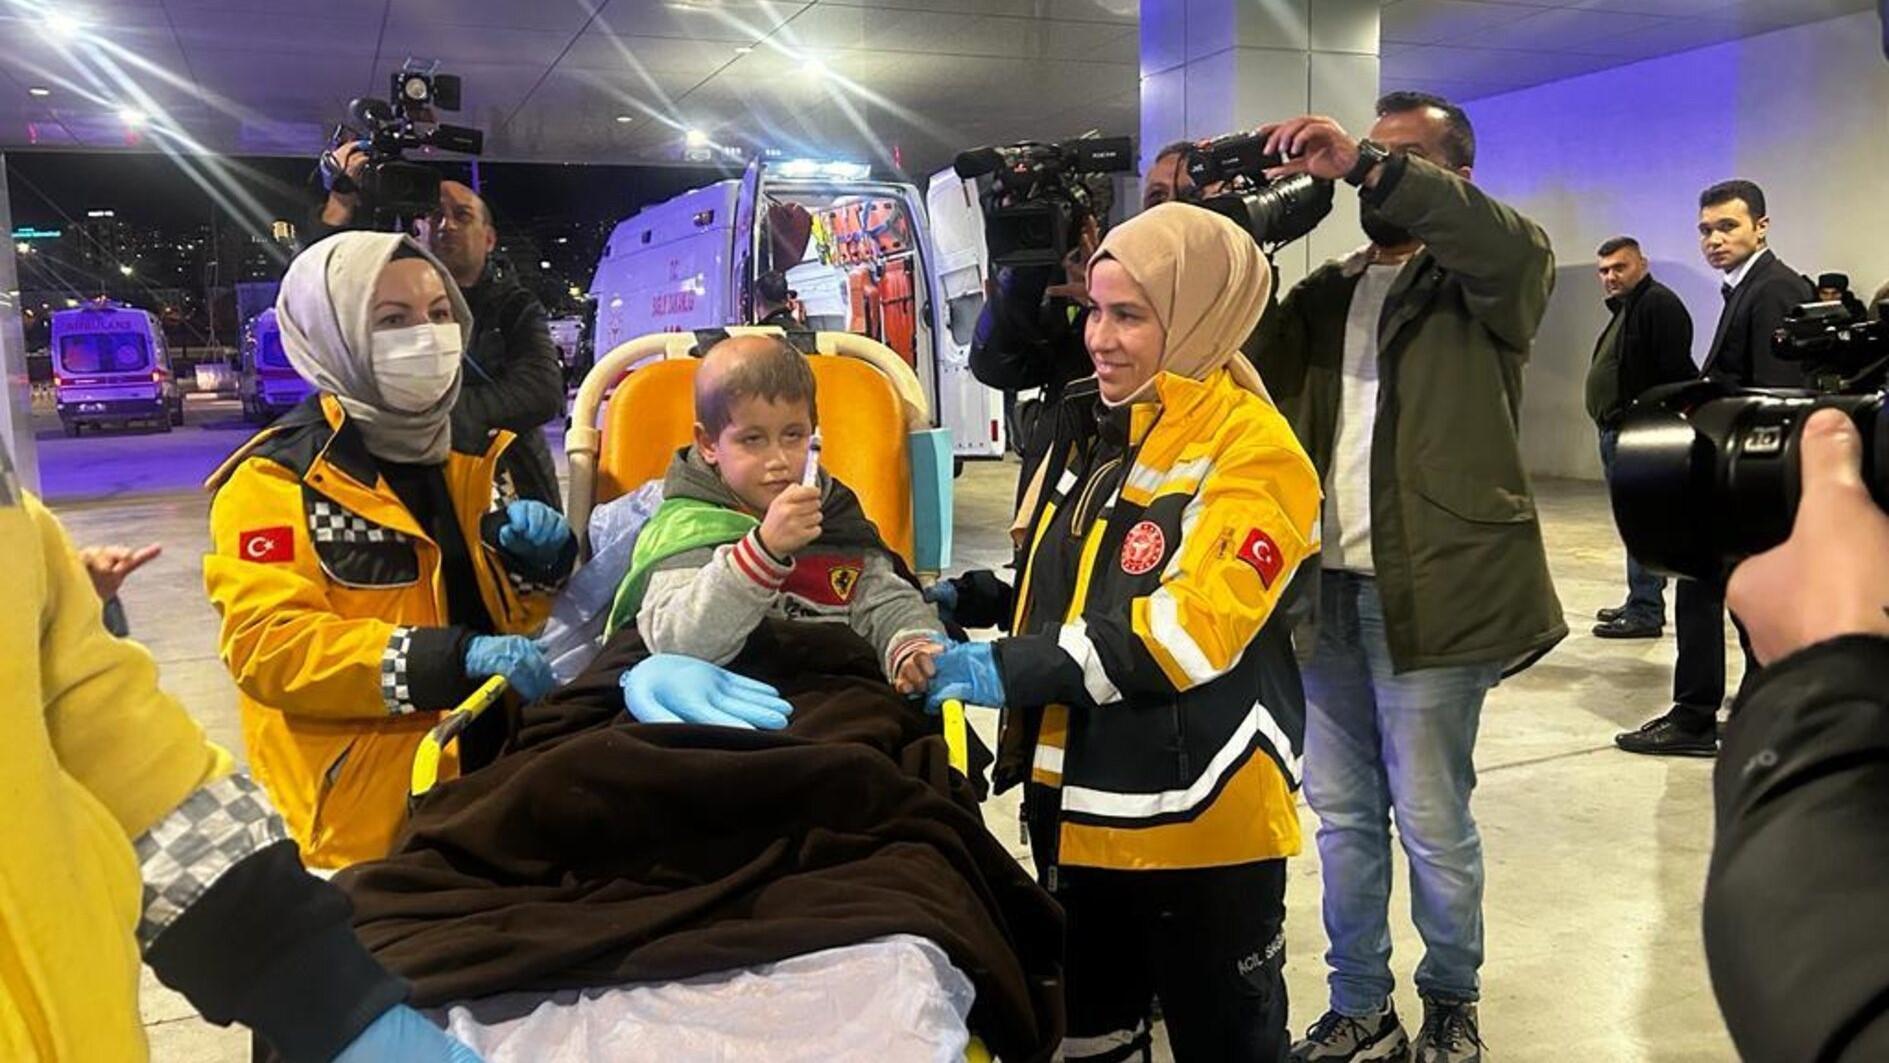 TÜRKIYE Nog 23 Gazaanse patiënten overgebracht naar Türkiye voor behandeling De vierde groep van 23 patiënten en 21 metgezellen die vanuit Gaza zijn overgebracht, is in Ankara aangekomen voor hun behandelingen, zo heeft minister van Volksgezondheid Fahrettin Koca aangekondigd.